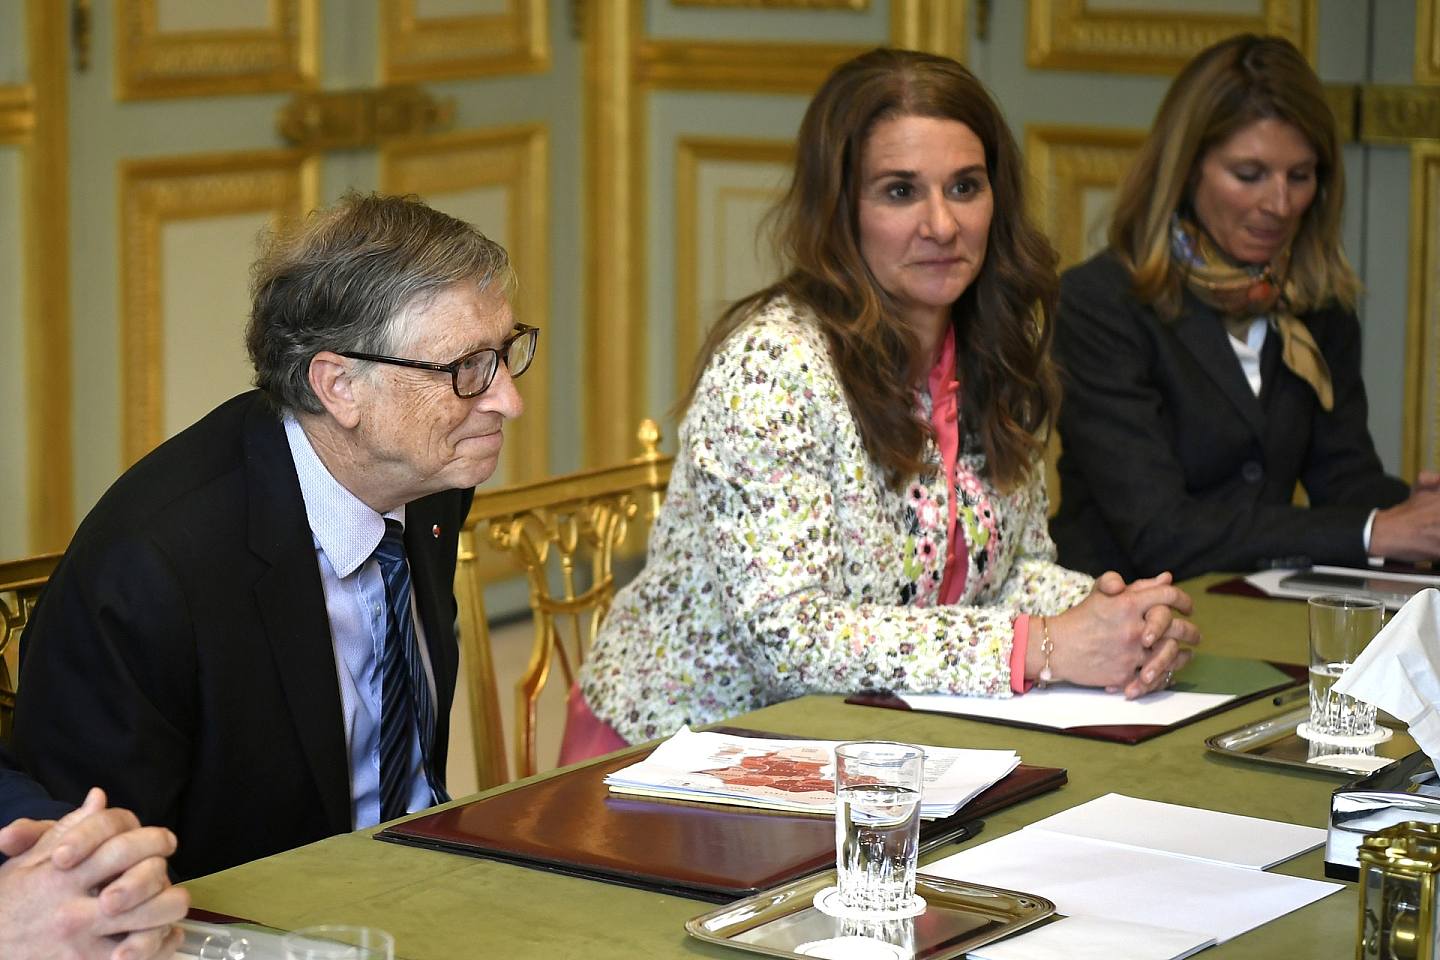 隨著比爾和梅琳達·蓋茨基金會（Bill and Melinda Gates Foundation）於2000年成立，夫婦二人的重心轉移到了慈善事業，包括全球衛生及教育等。(REUTERS)